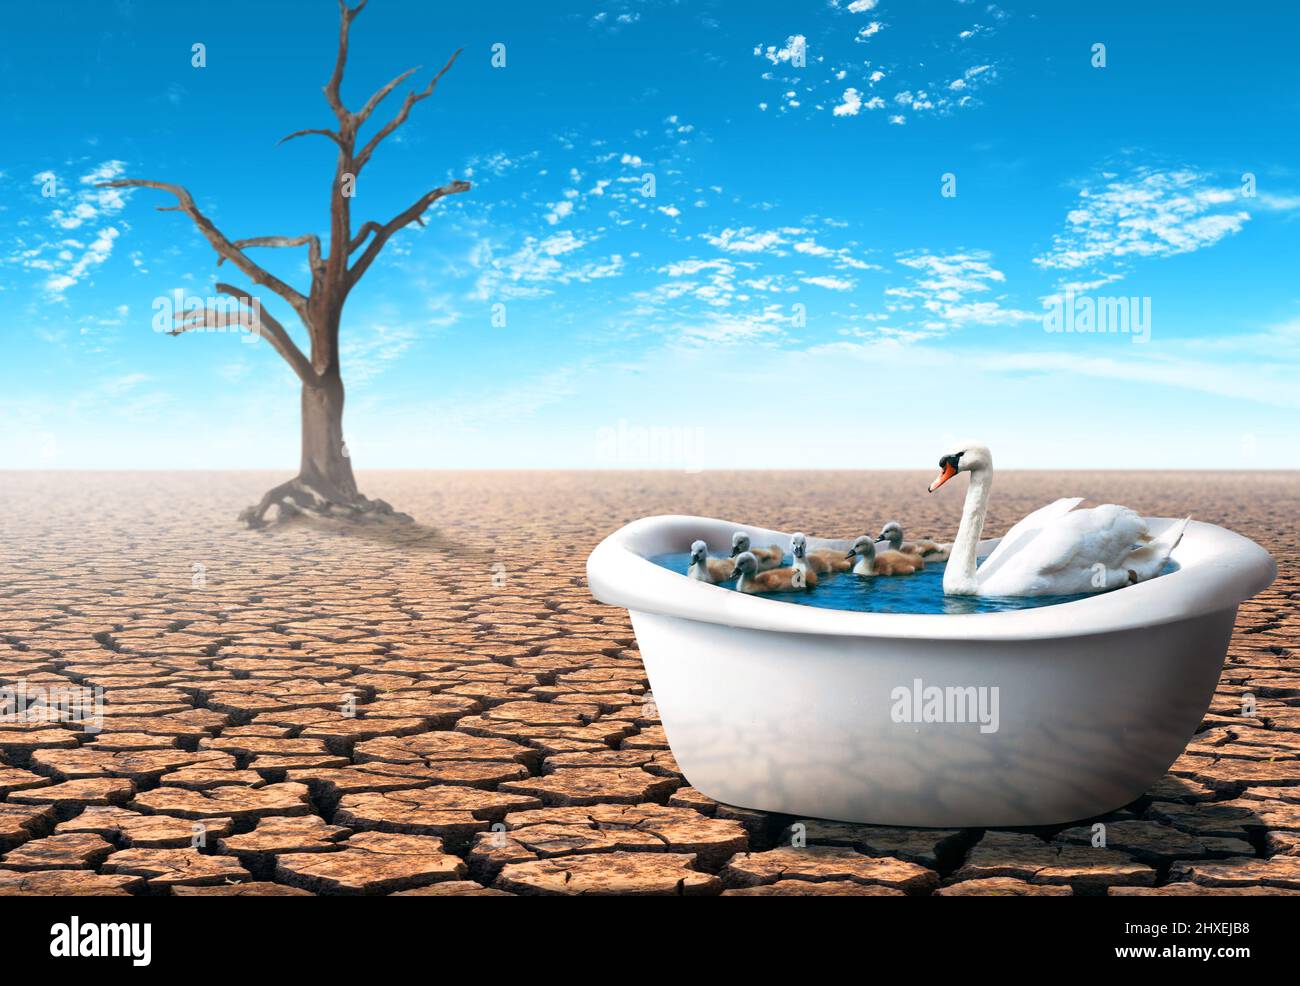 Schwan mit ihren Babys in einer Badewanne in einer trockenen Wüste. Pandemiekonzept. Stockfoto